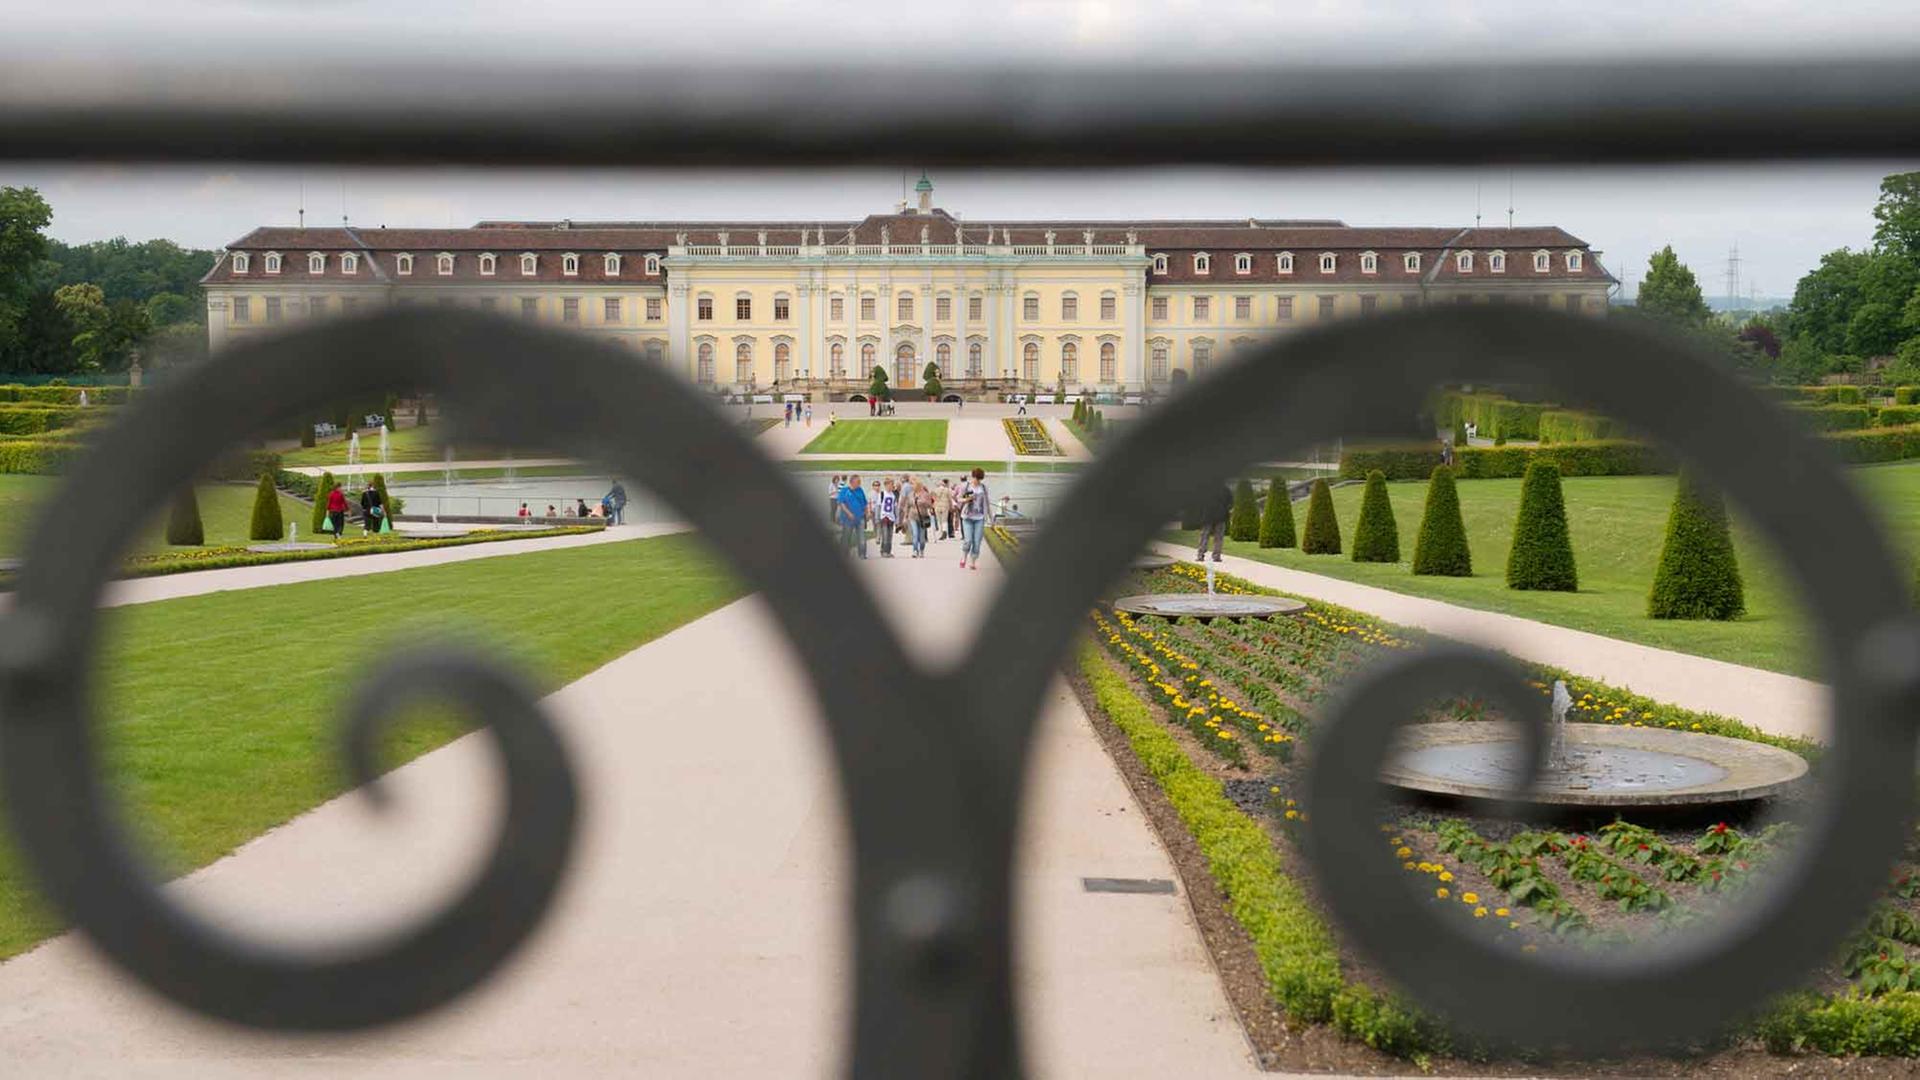 Blick durch den Schlosspark in Ludwigsburg auf die Gartenfront des barocken Schlosses